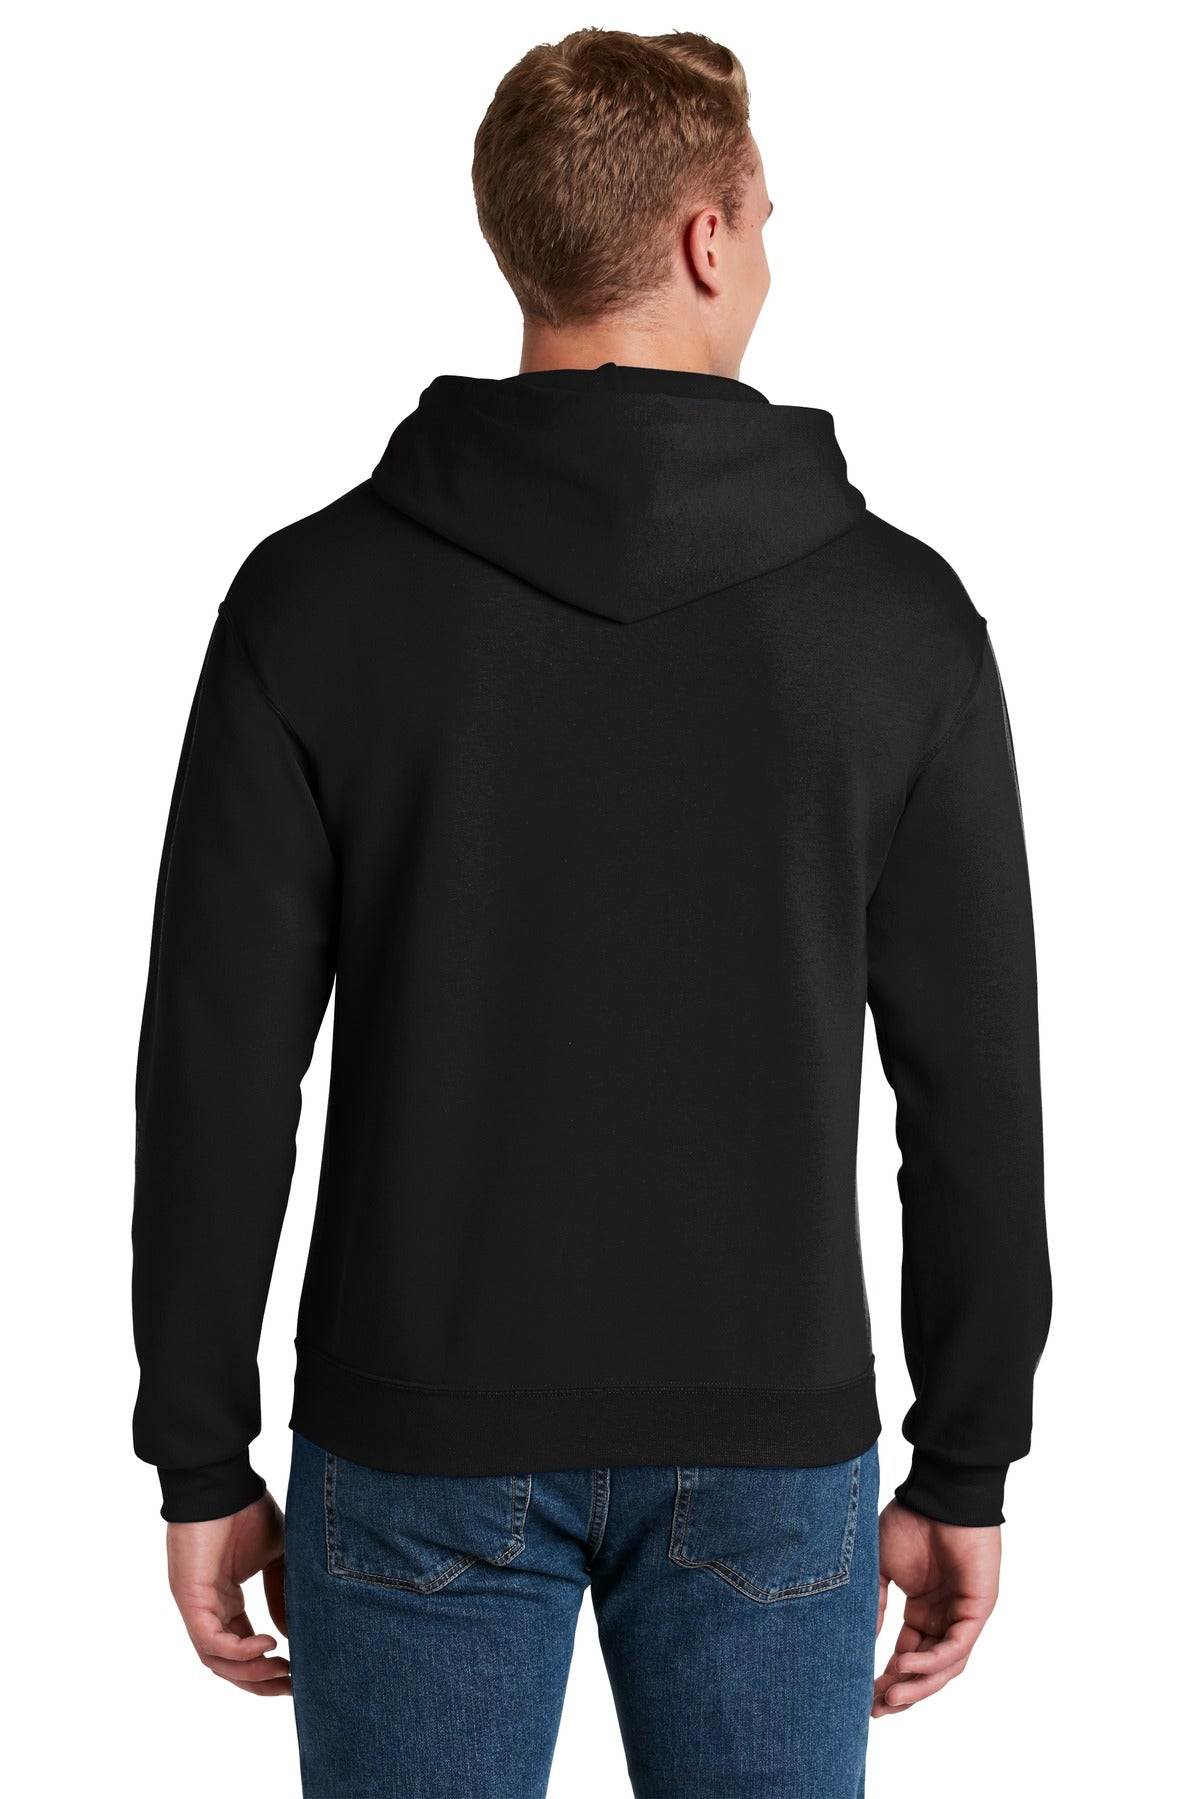 Jerzees - NuBlend Pullover Hooded Sweatshirt. 996M